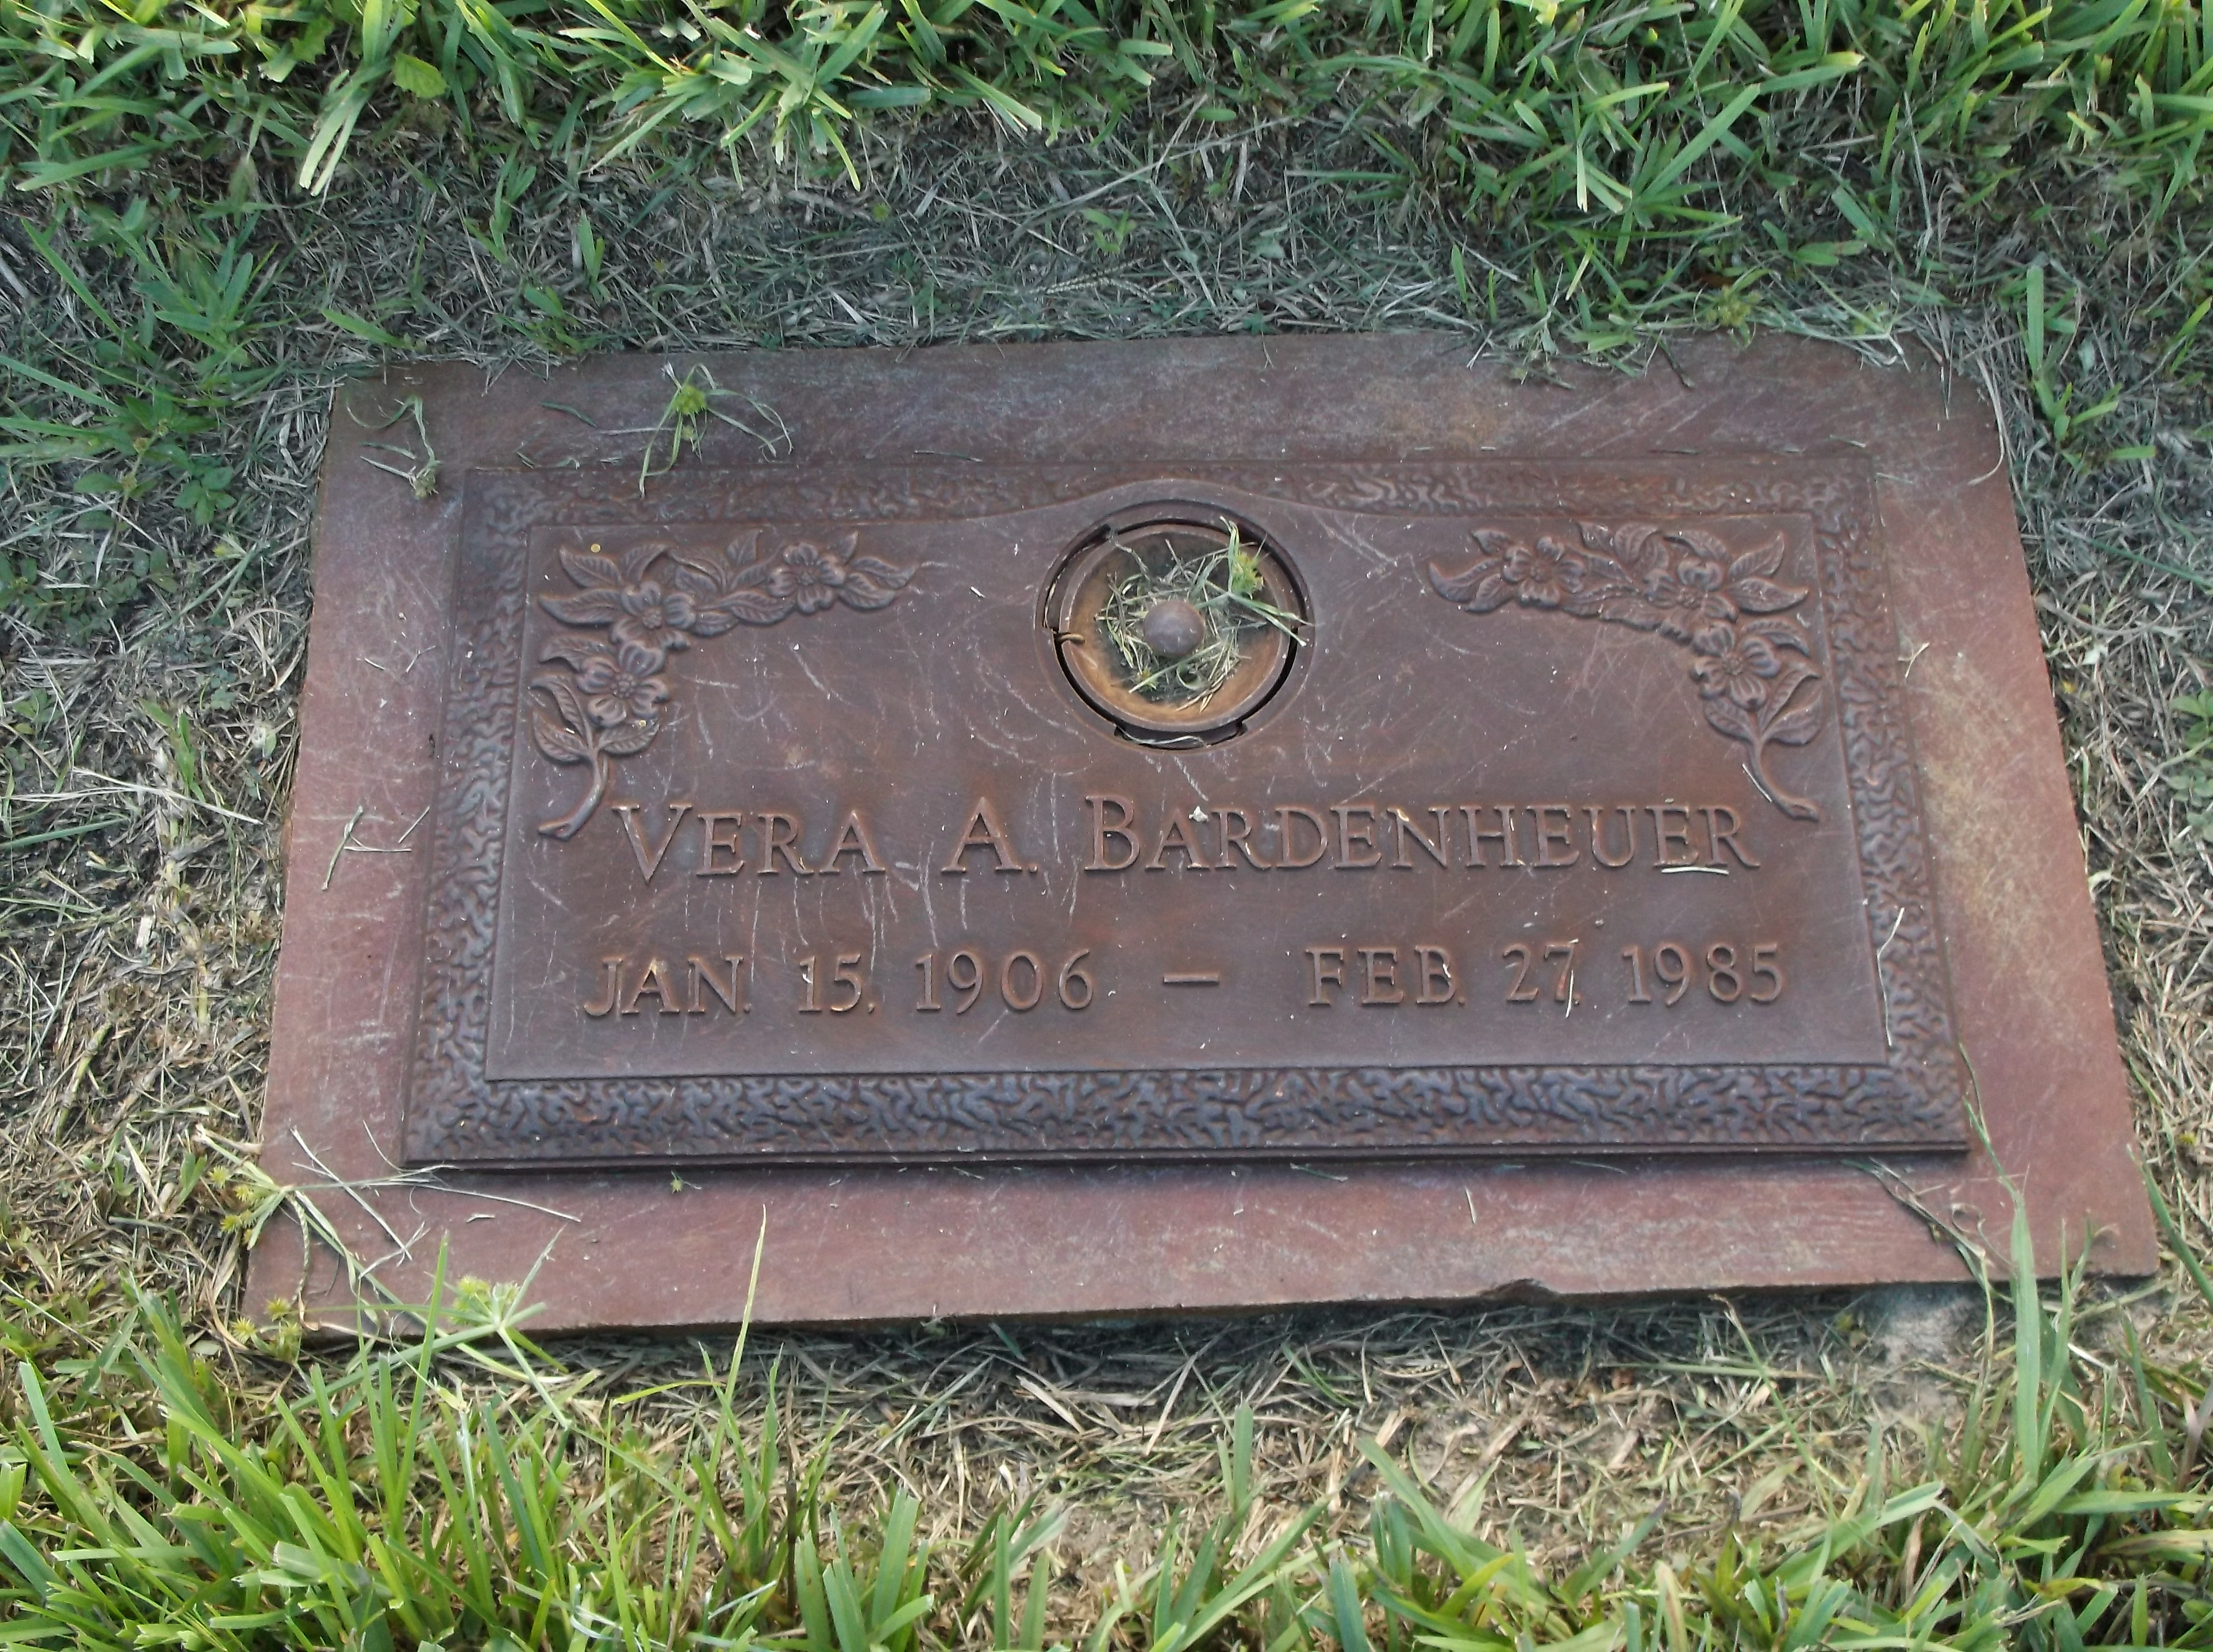 Vera A Bardenheuer